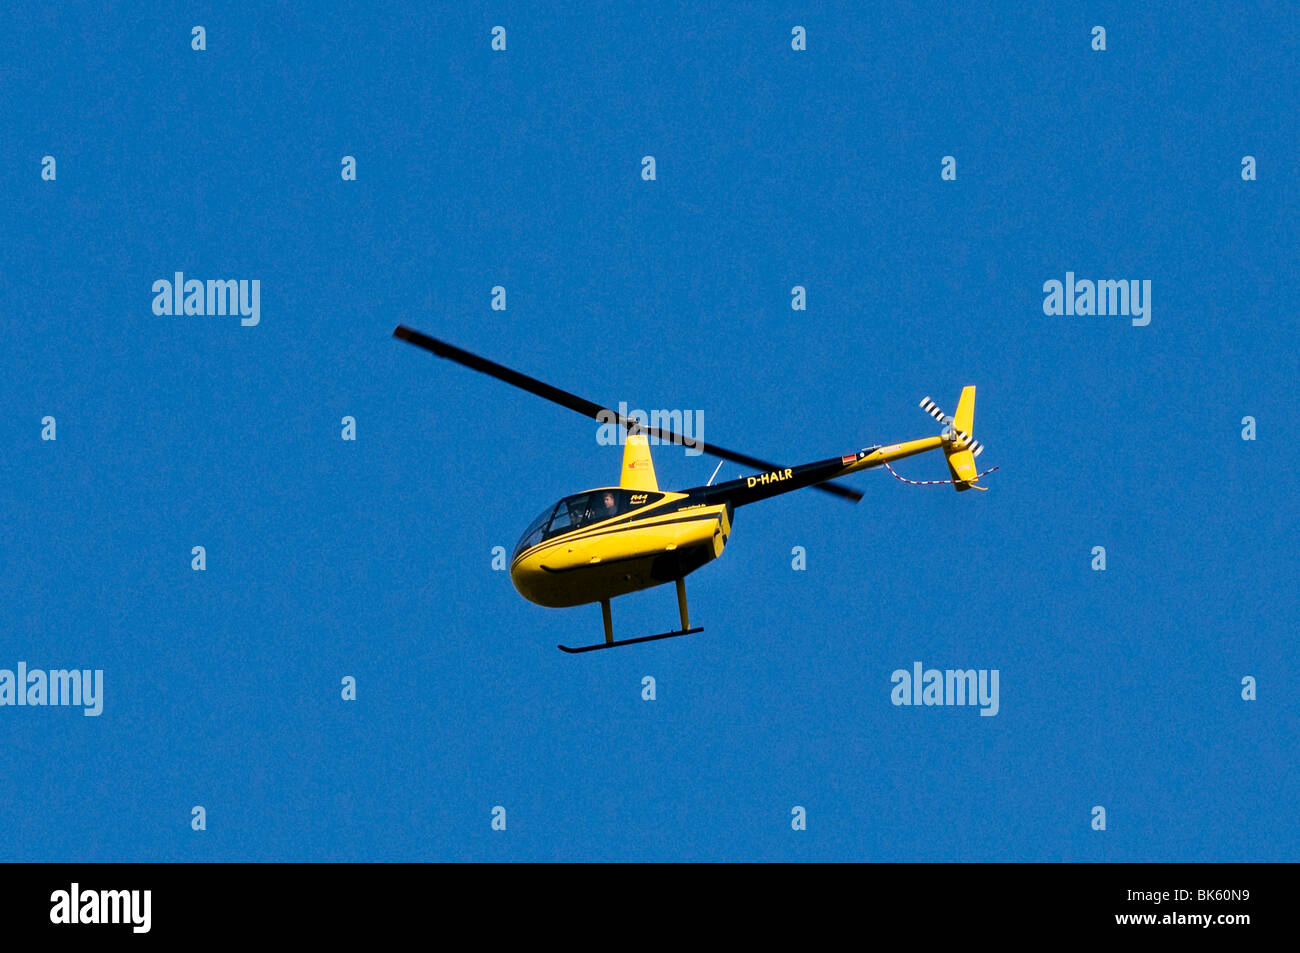 Schwarze und gelbe Hubschrauber, Air Lloyd Robinson R44 Raven II fliegen vor blauem Himmel Stockfoto